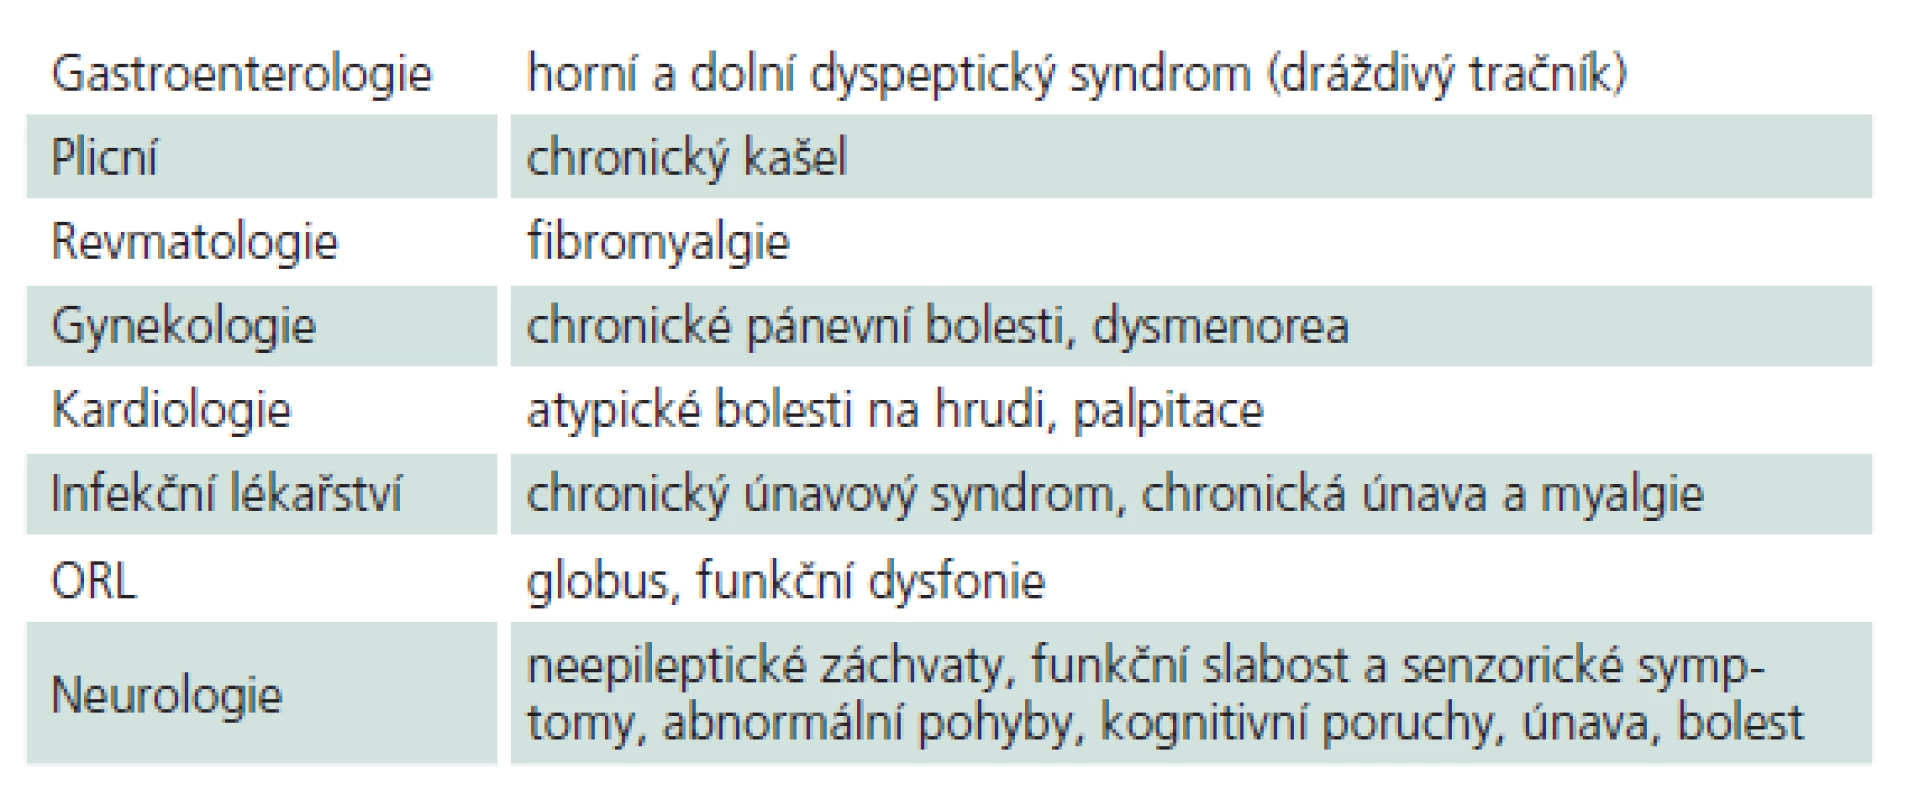 Funkční symptomy v různých medicínských oborech (upraveno podle [2]).